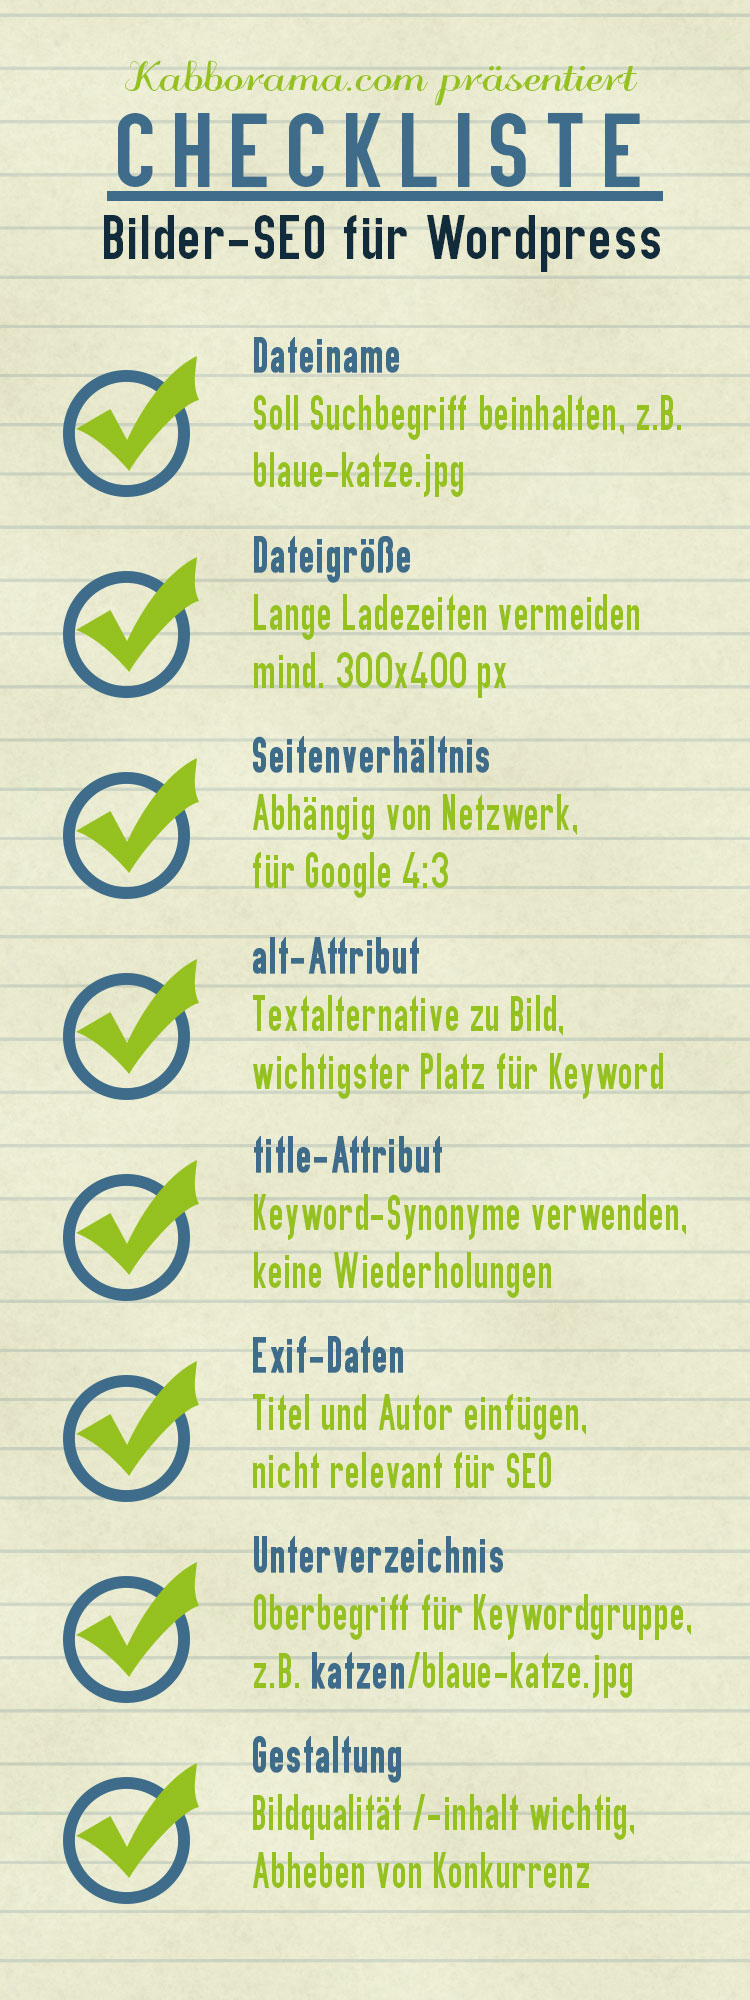 Checkliste Bilder-SEO